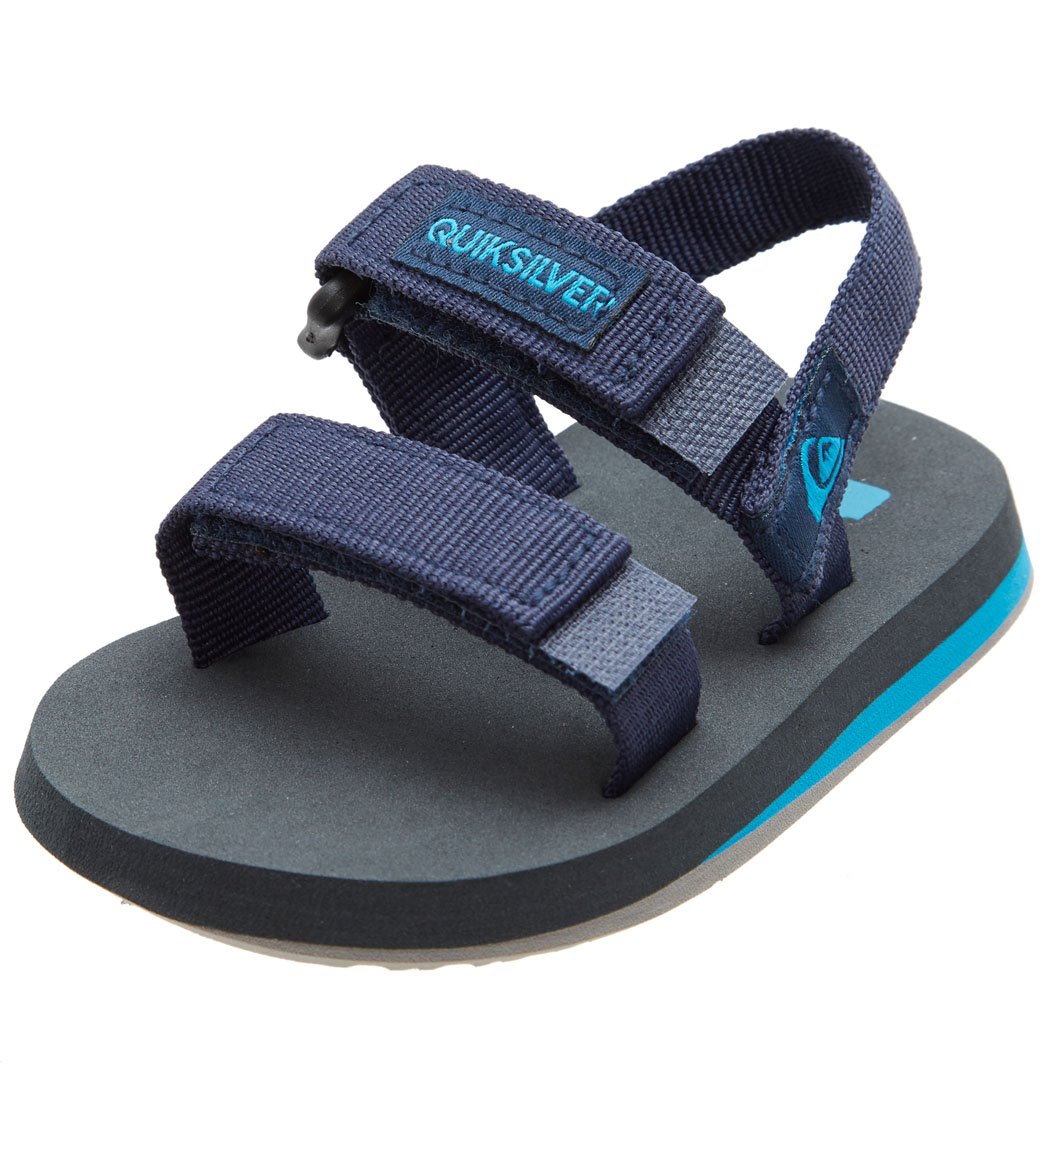 Quiksilver Boys' Monkey Caged Sandals - Blue/Grey/Blue 420 - Swimoutlet.com